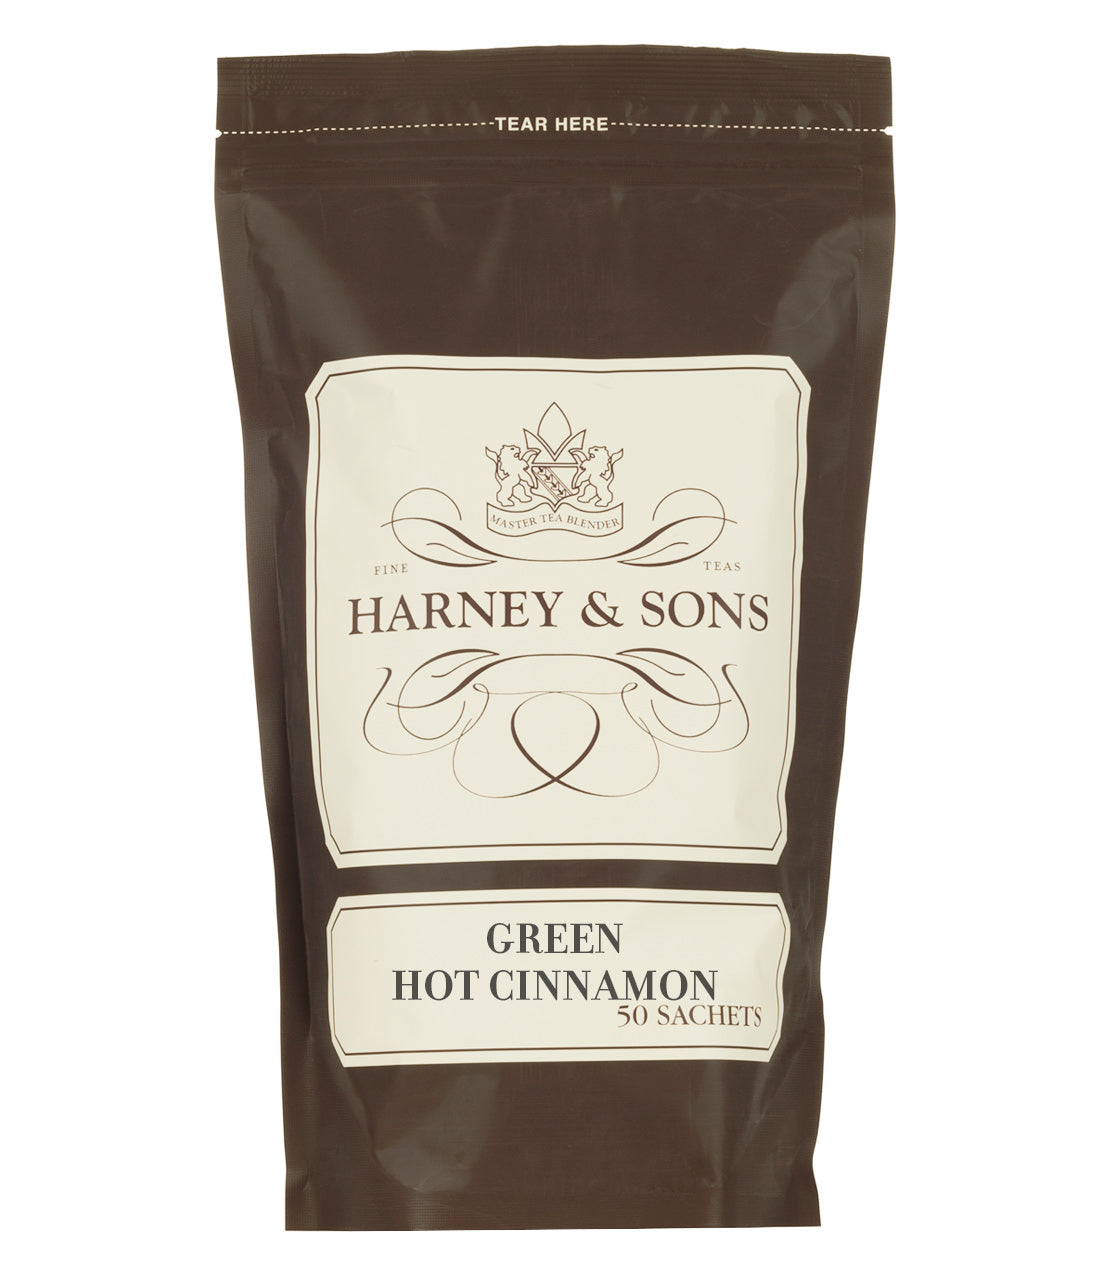 Green Hot Cinnamon Spice - Sachets Bag of 50 Sachets - Harney & Sons Fine Teas